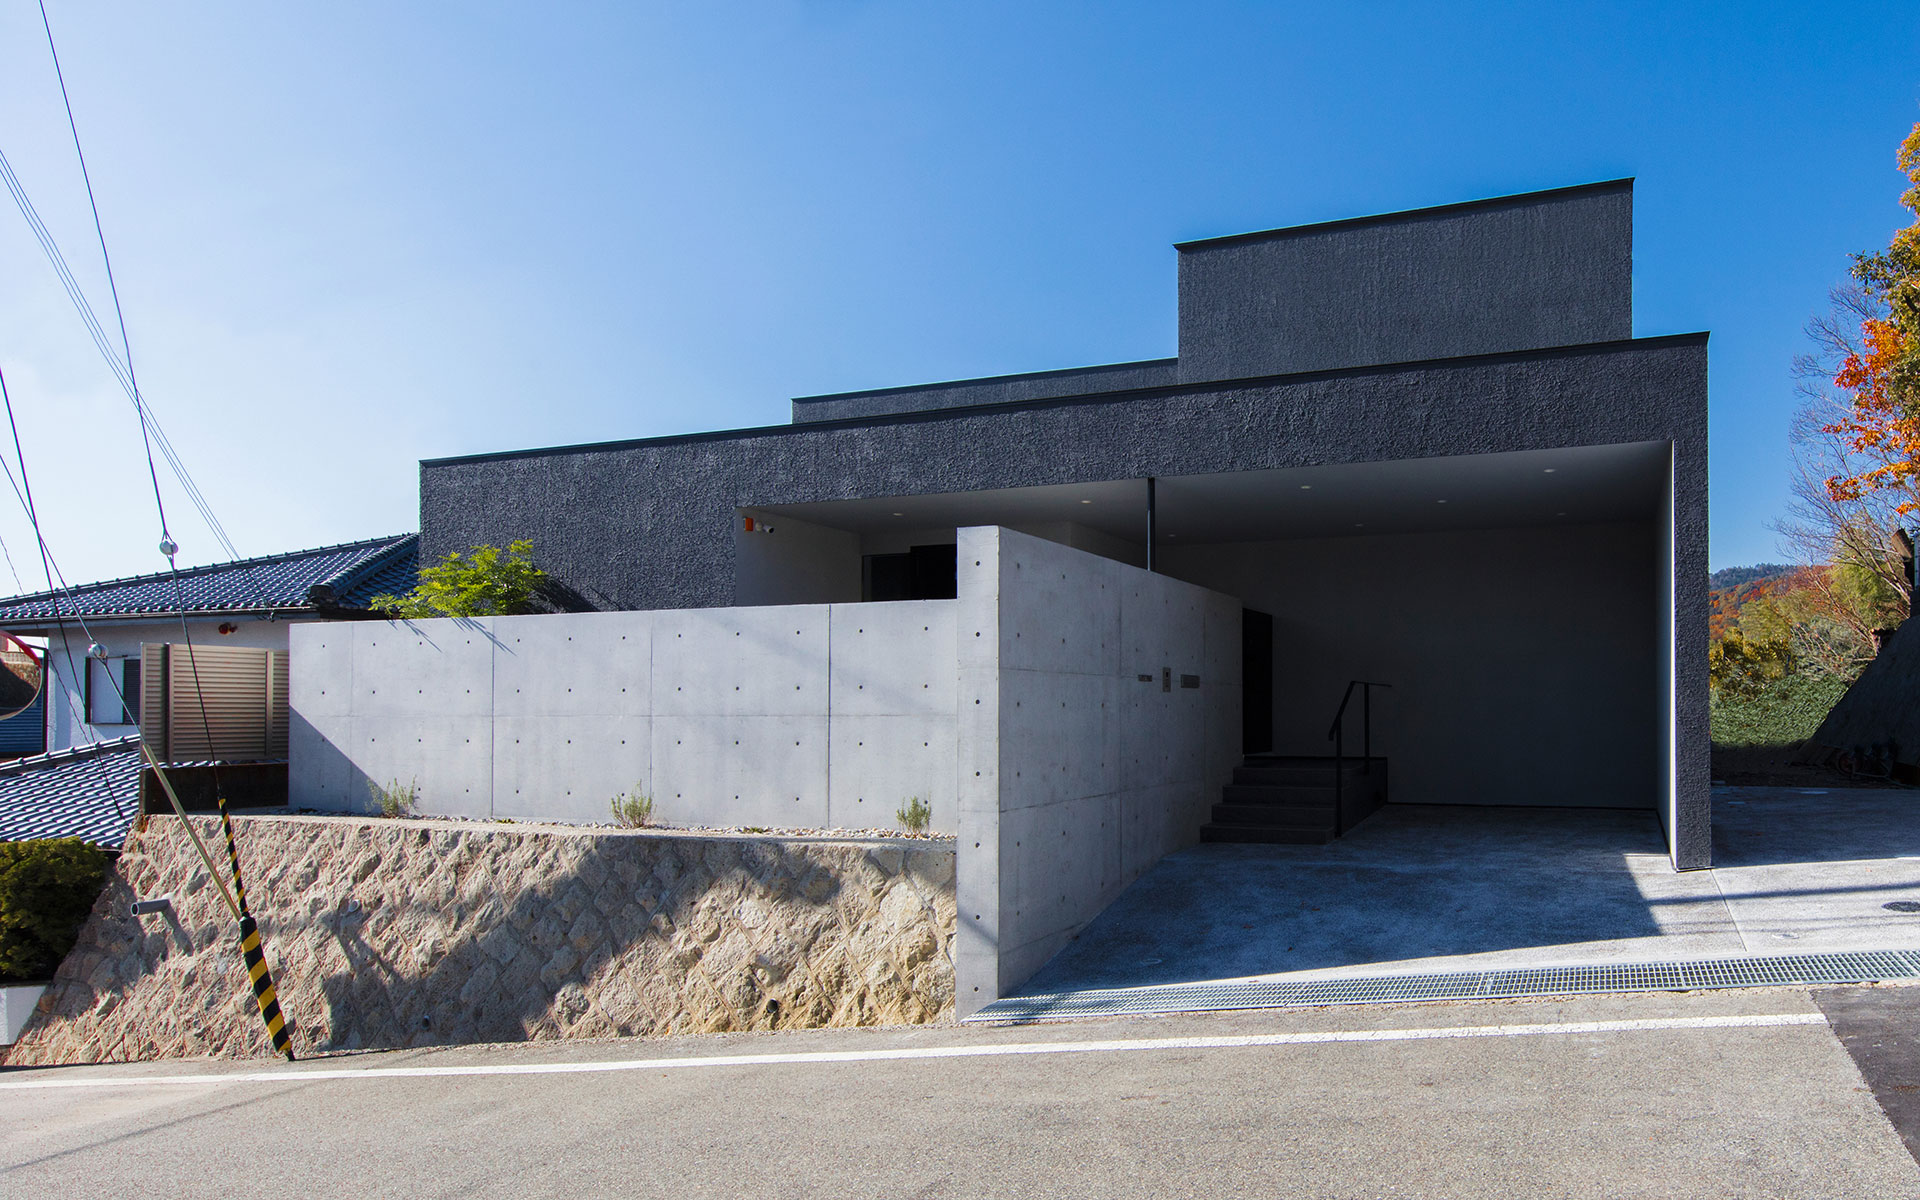 神戸建築家の真銅祥一朗設計による箕面の住宅 コンクリート打ち放しの塀でデザインされる